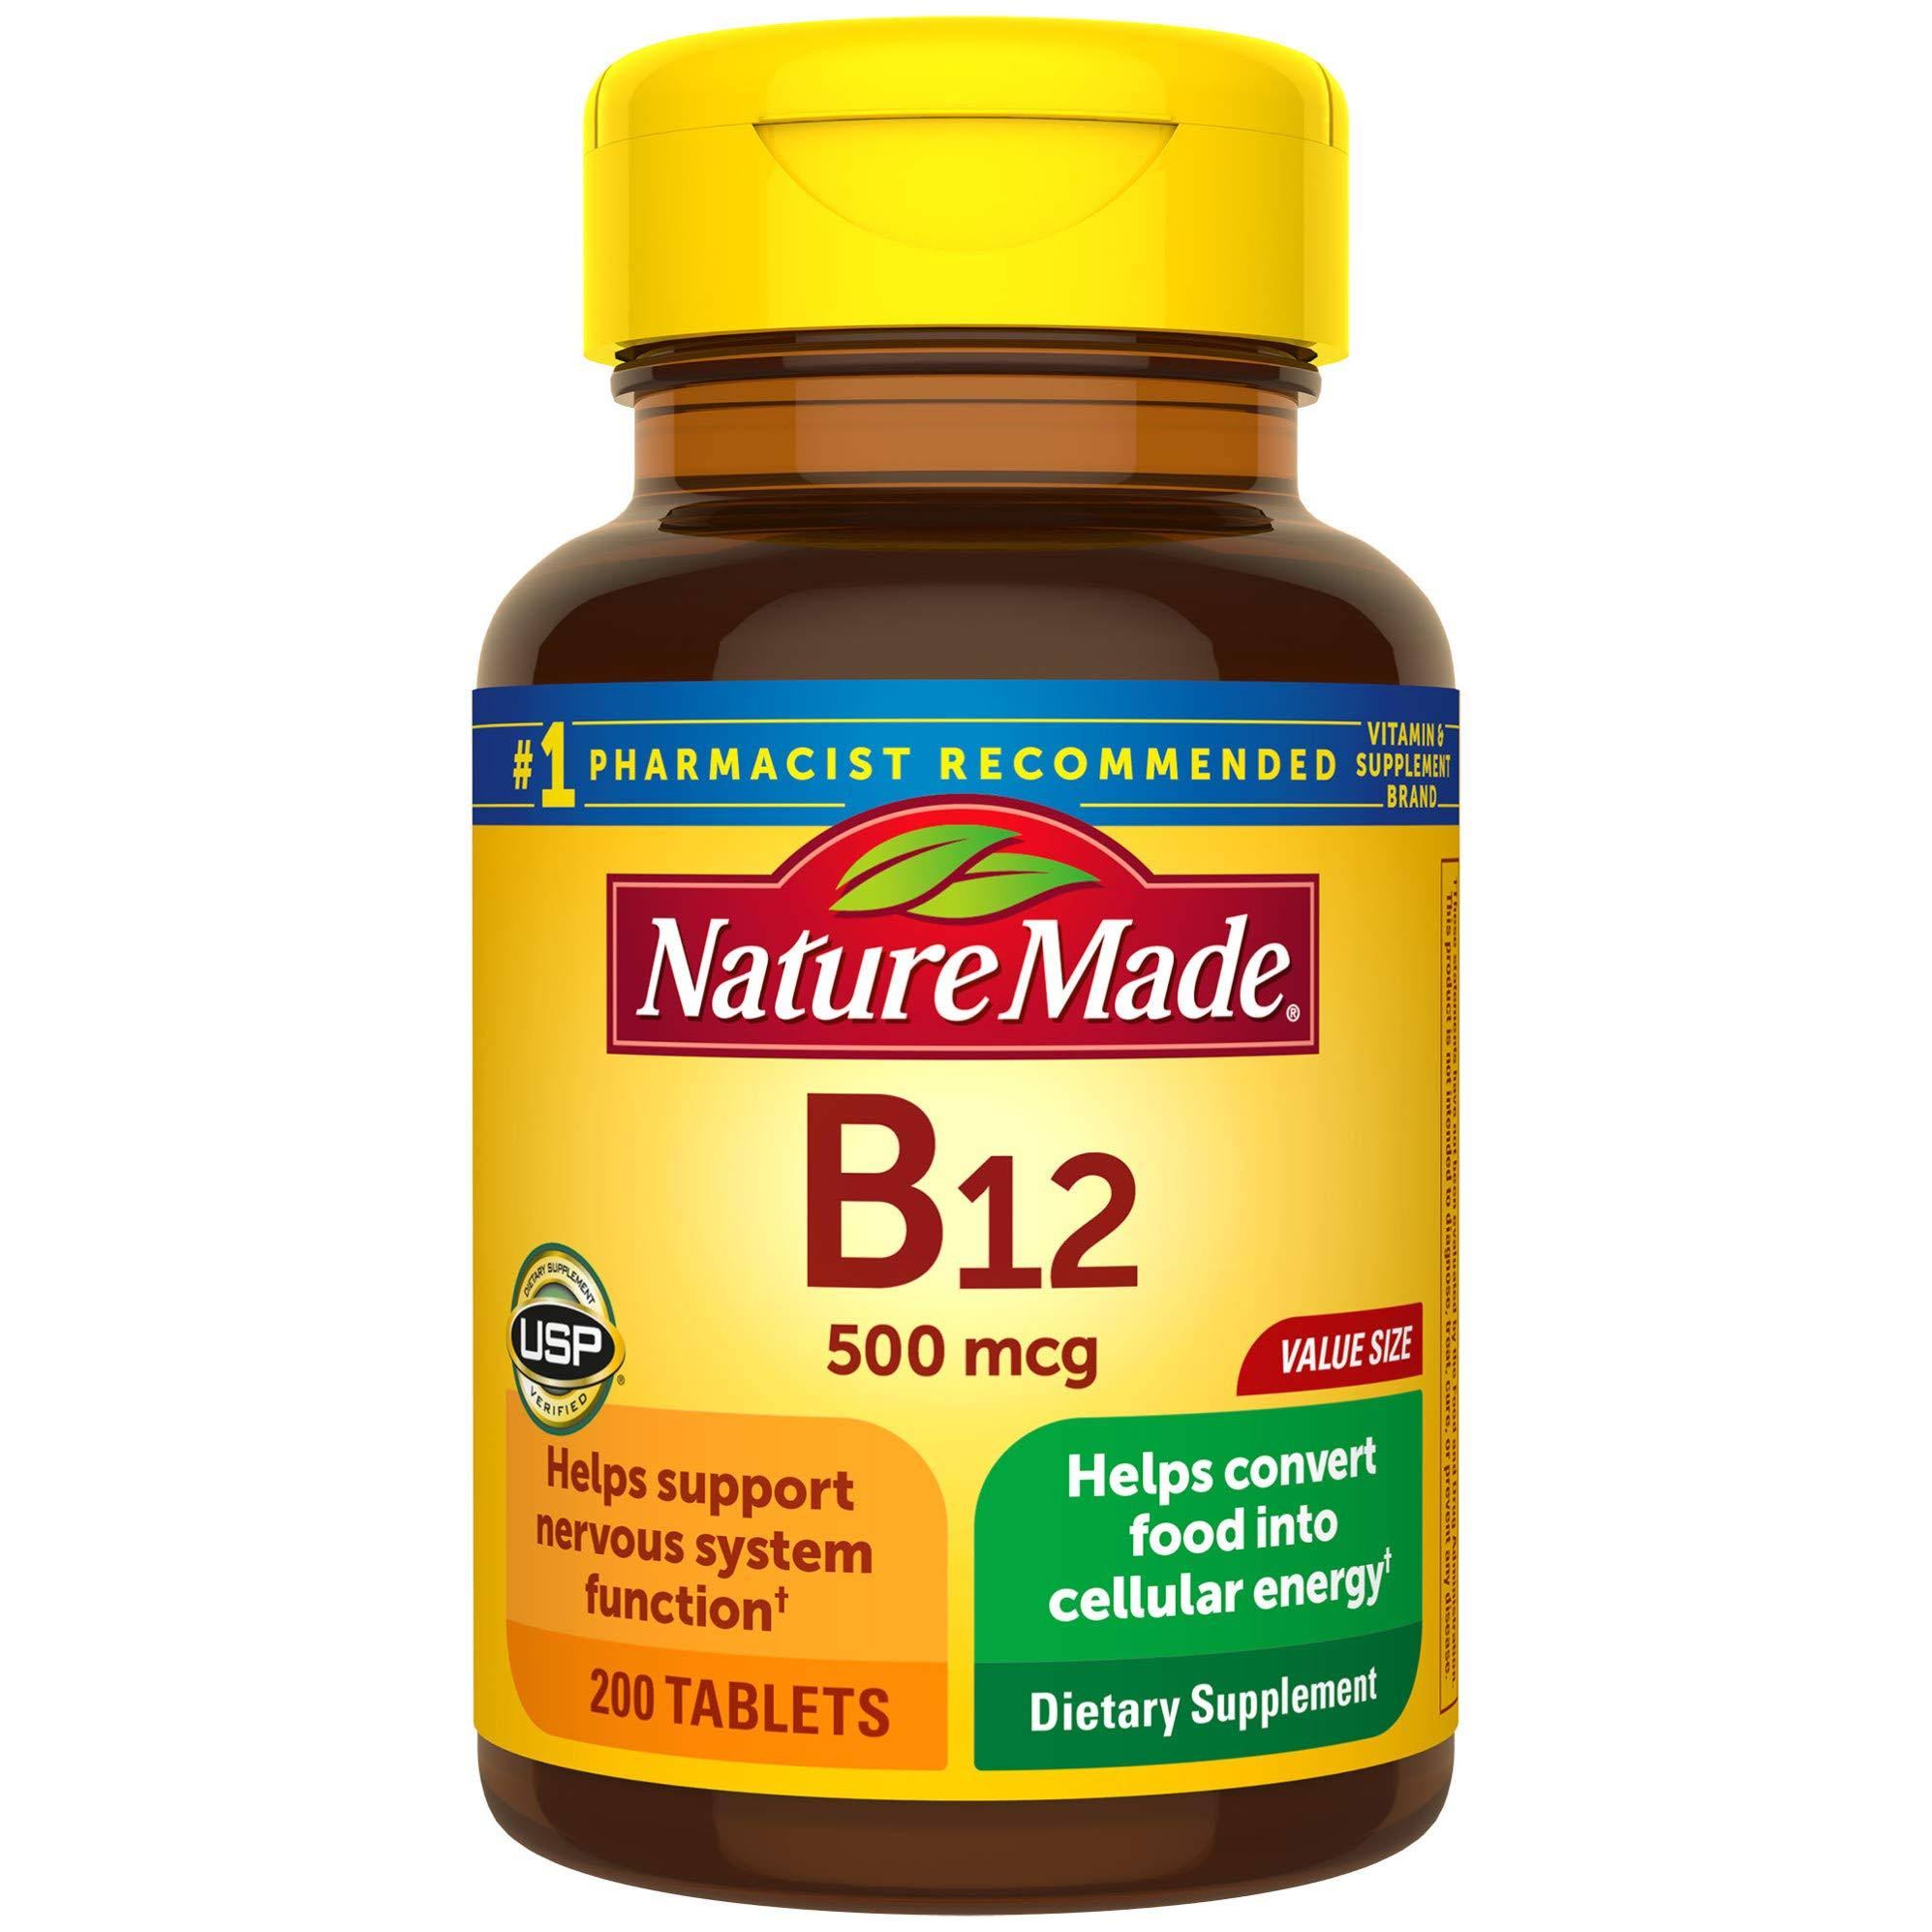 Nature Made Vitamin B12 - 500mg, 200 Tablets